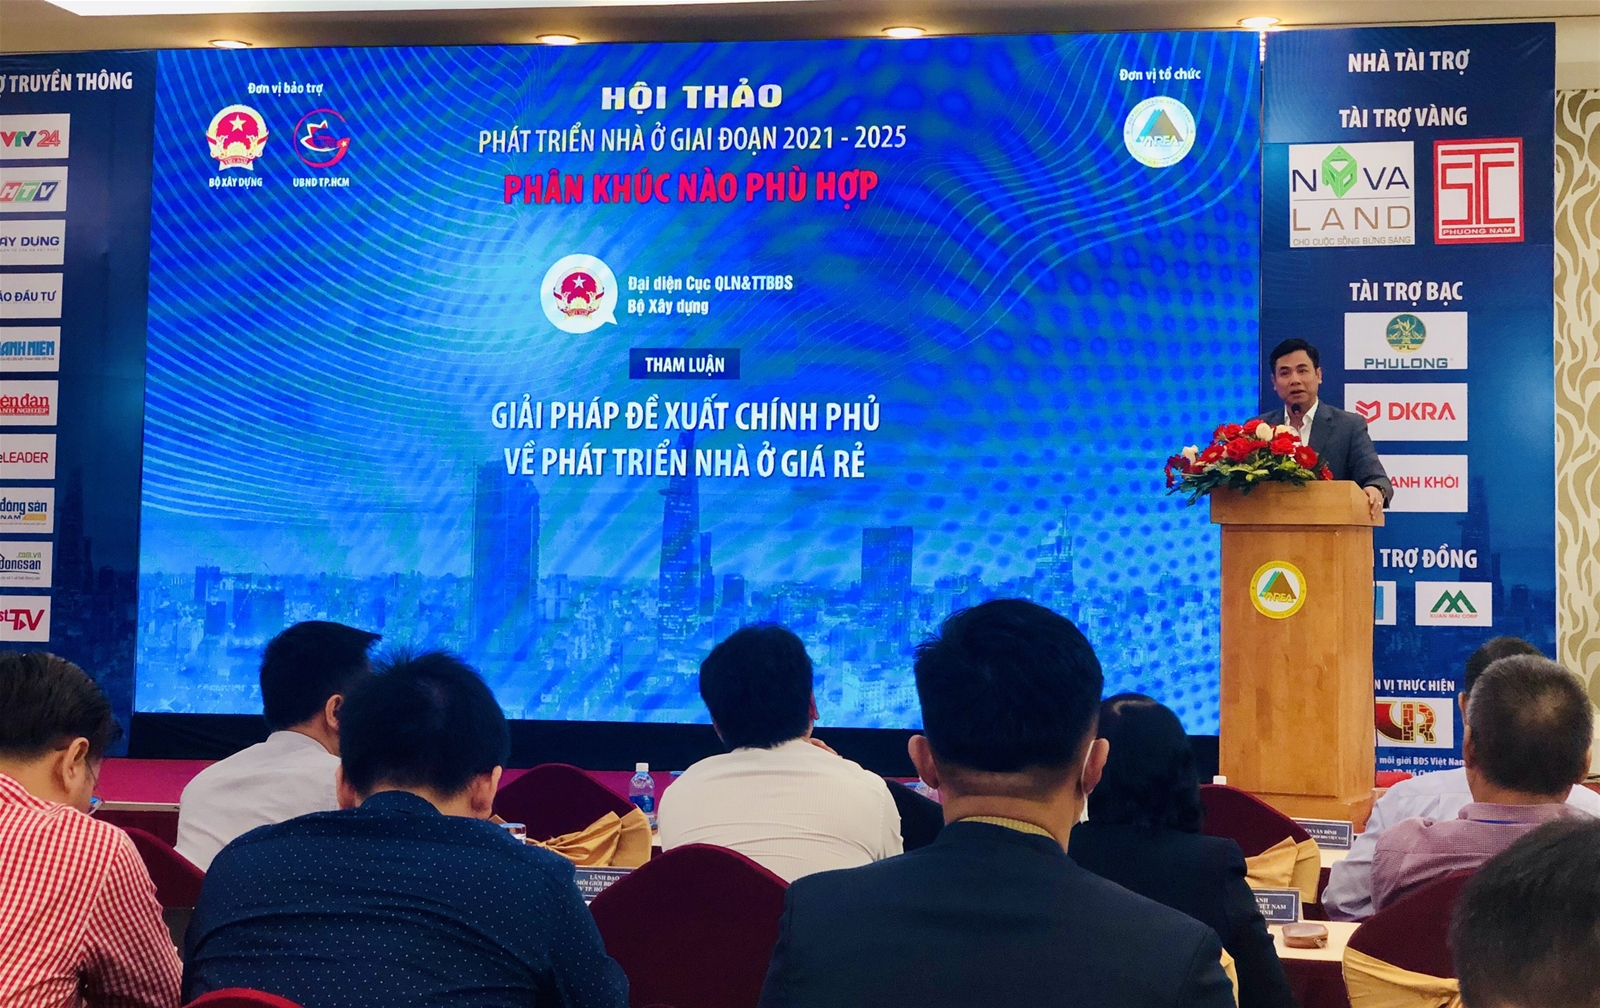  Ông Nguyễn Mạnh Khởi, Phó Cục trưởng Cục Quản lý nhà và thị trường bất động sản, Bộ Xây dựng, chia sẻ về các giải pháp phát triển nhà ở giá rẻ